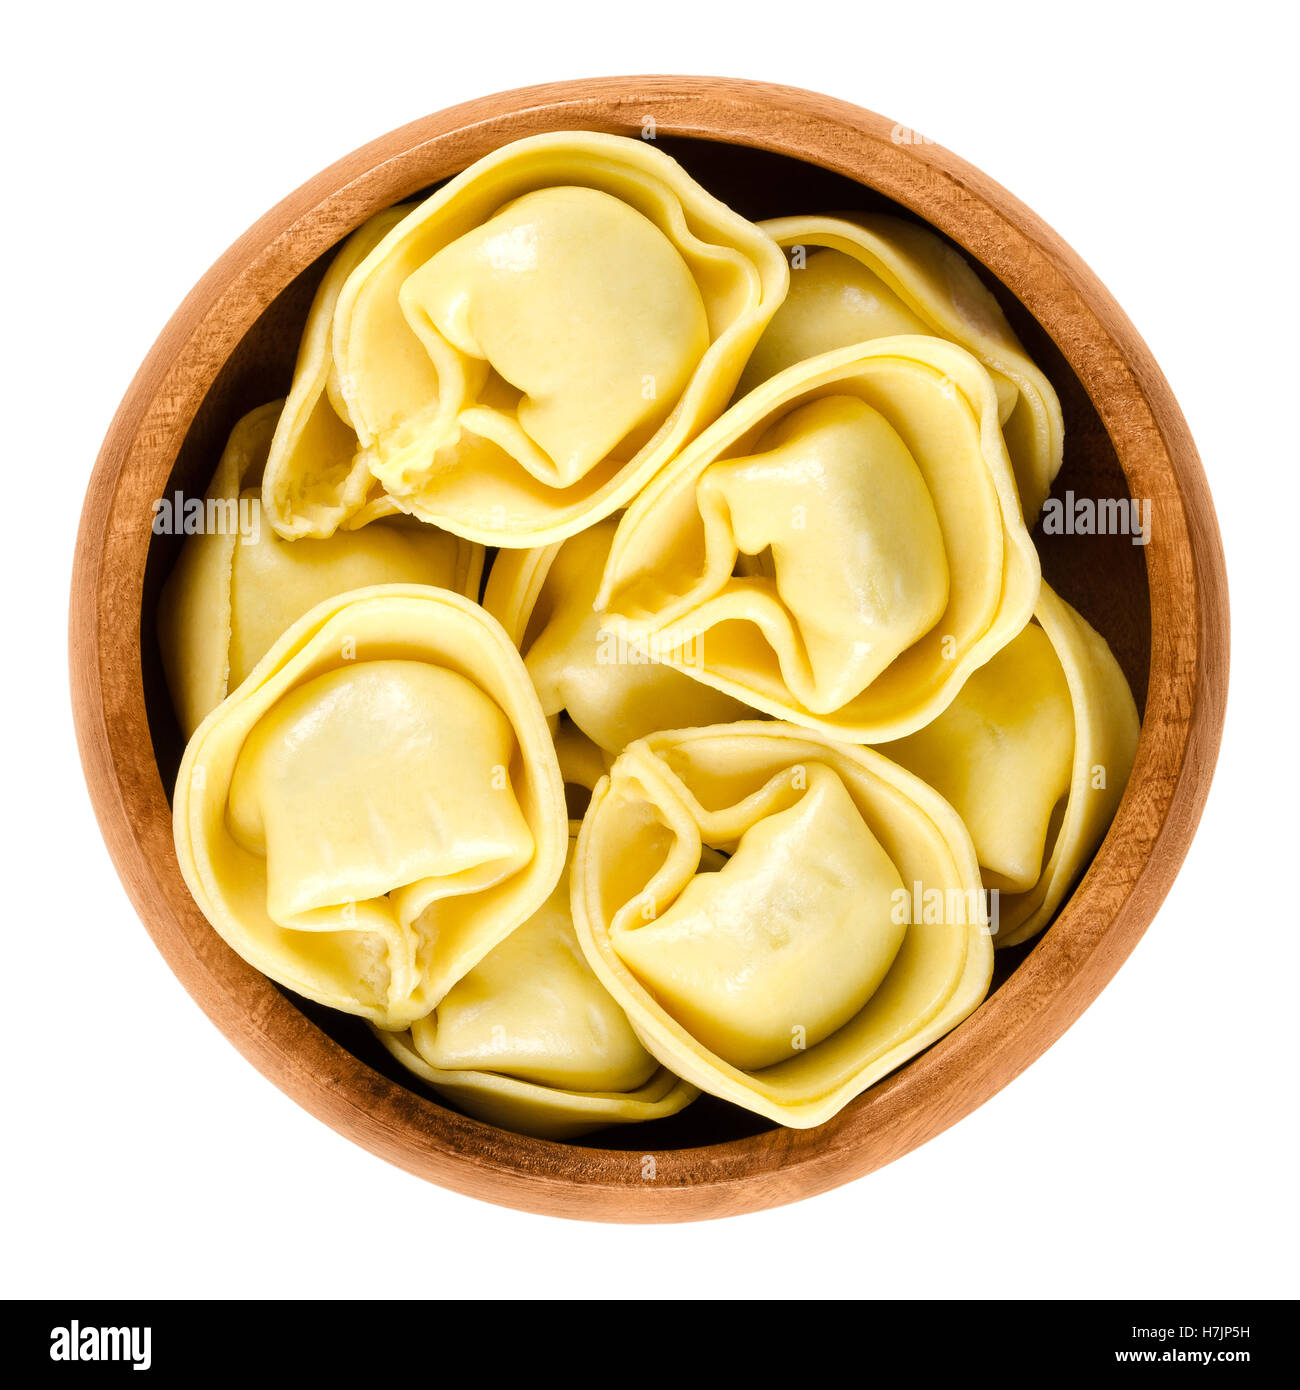 Tortelloni nella ciotola di legno. A forma di anello ripiene gnocchi di italiano con la stessa forma come tortellini, ma più grande. Foto Stock